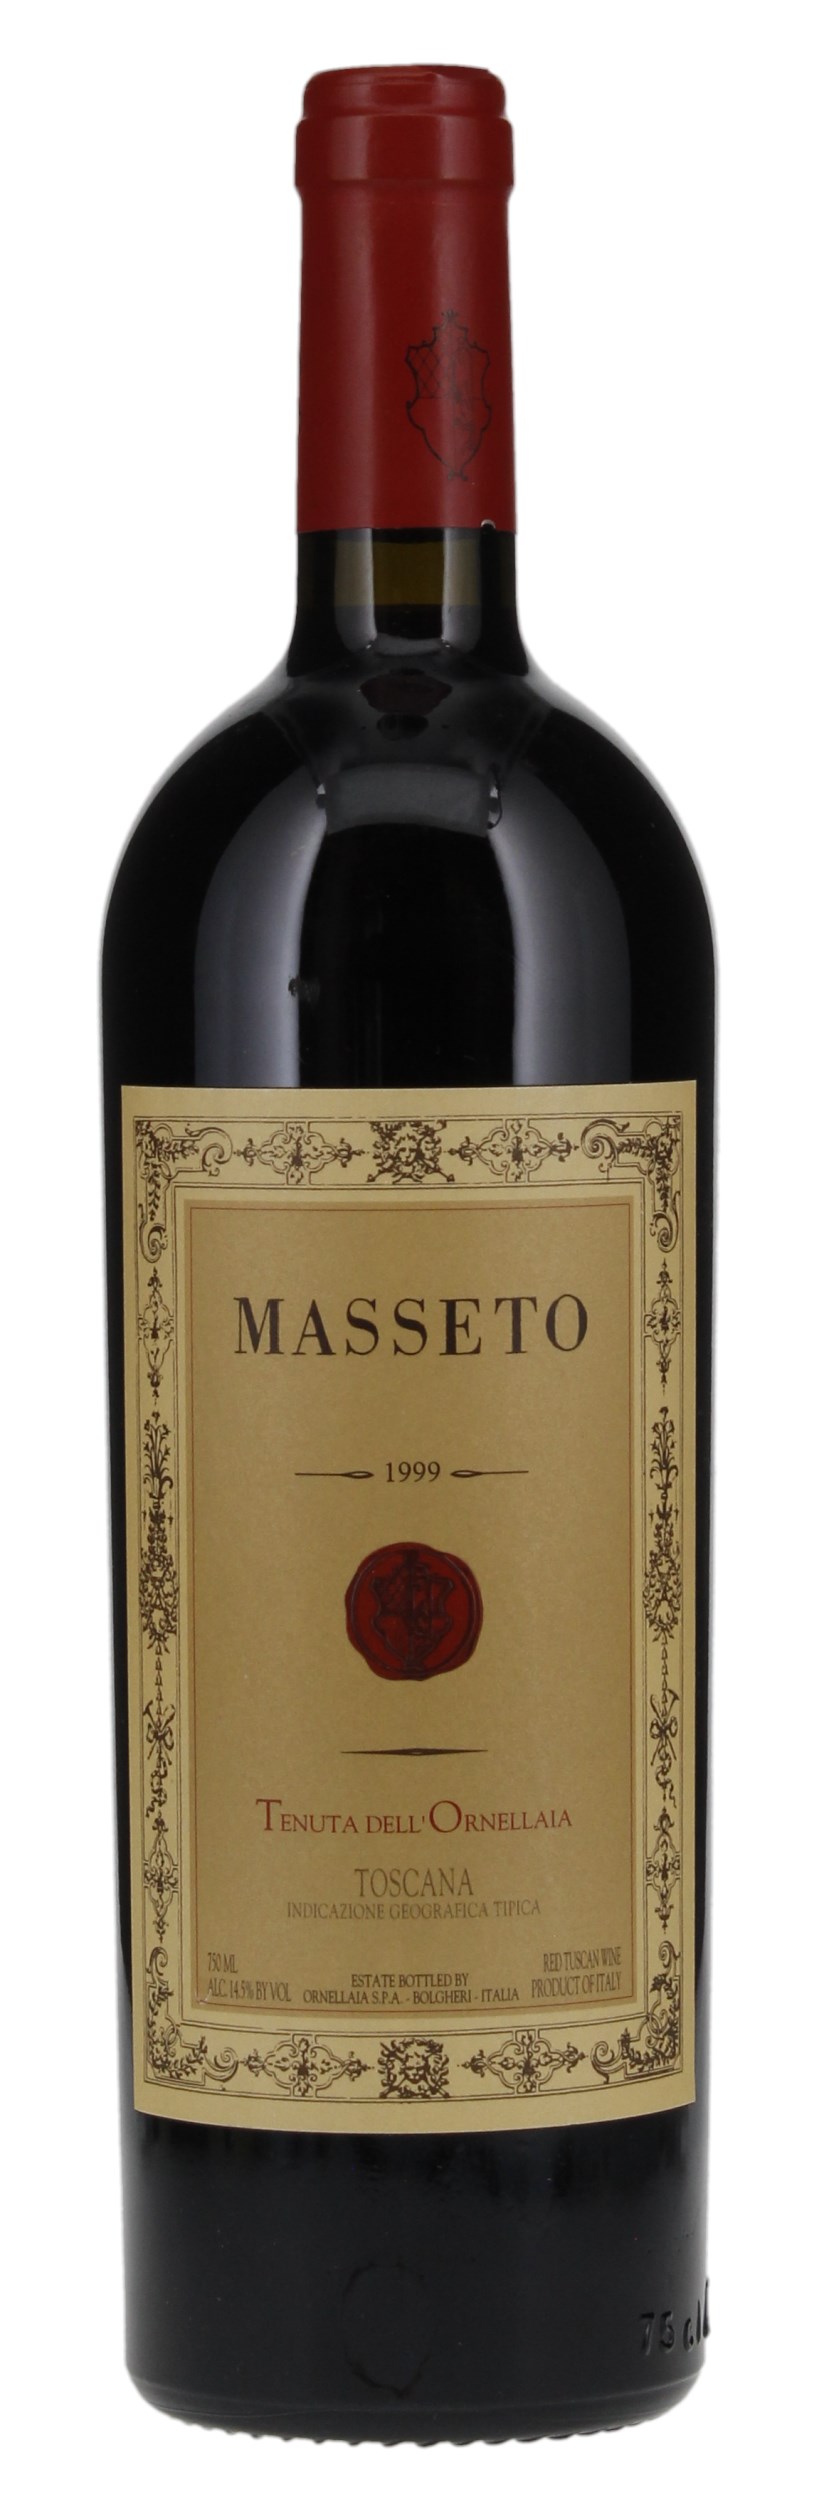 1999 Tenuta Dell'Ornellaia Masseto, 750ml